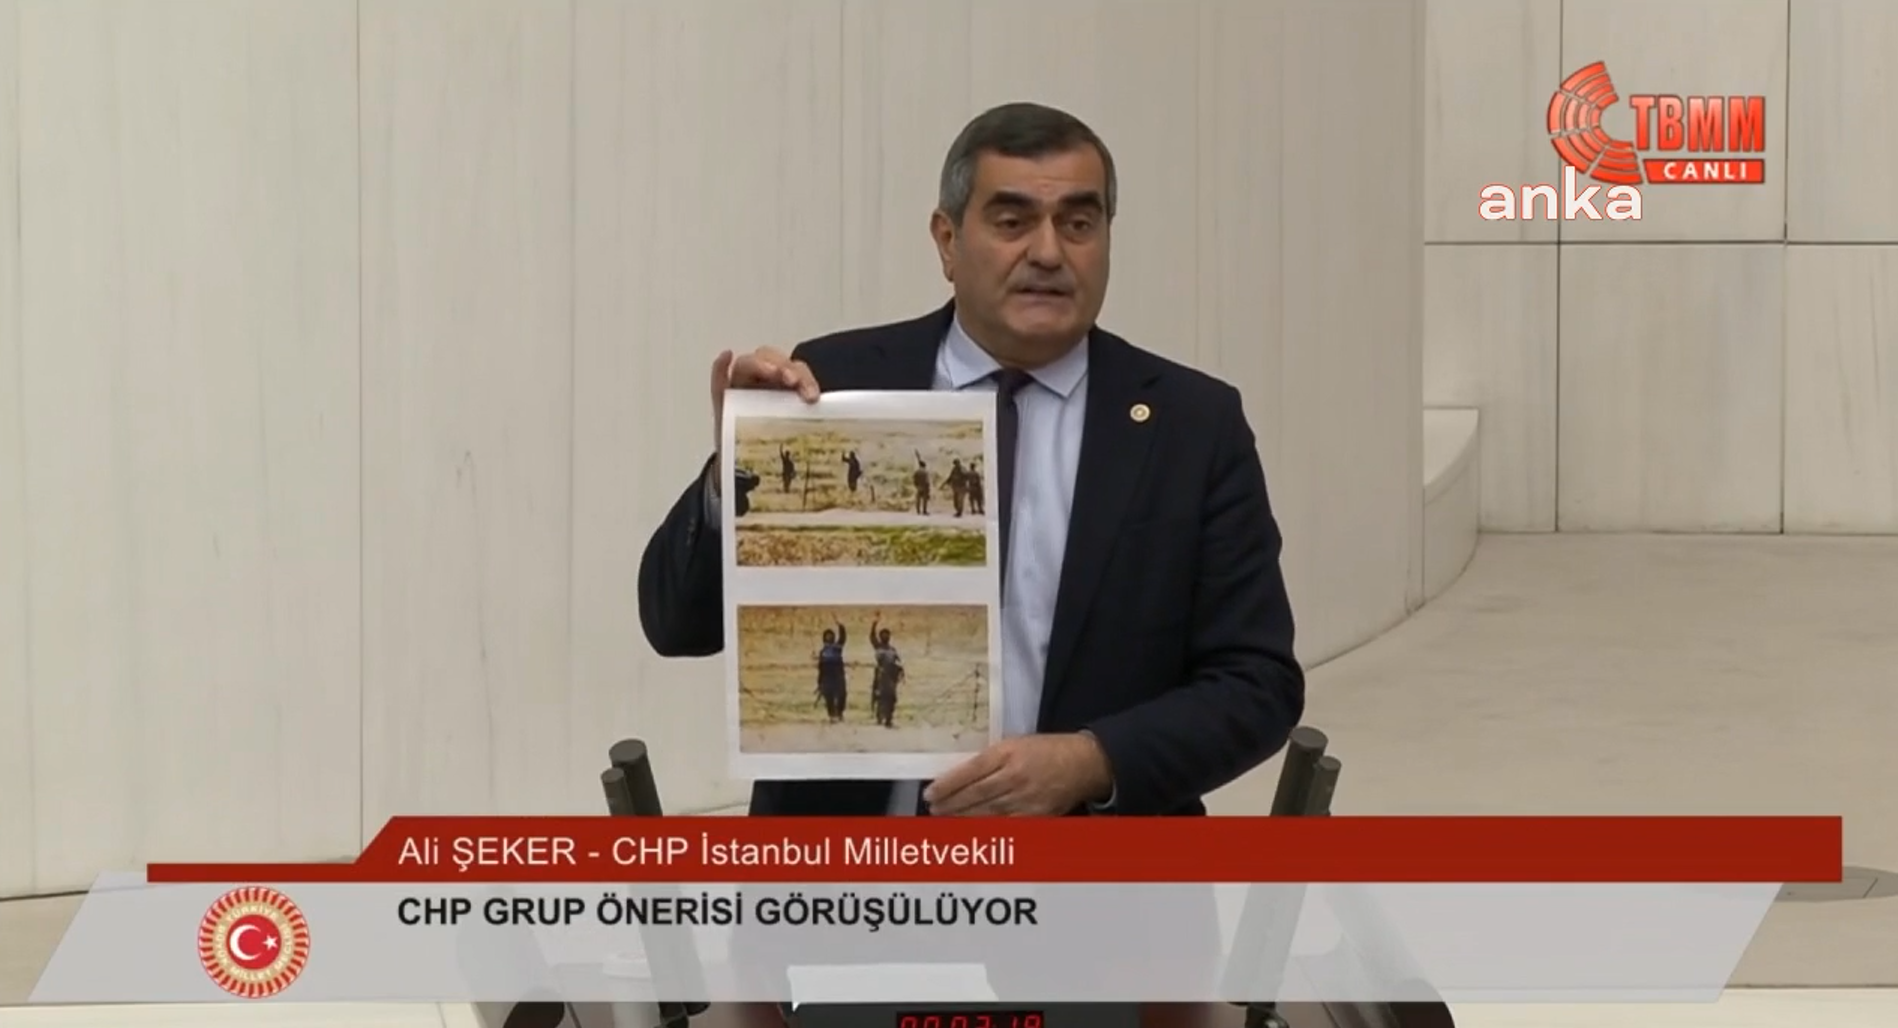 Meclis'te Taksim saldırısı araştırılsın önergesi sırasında tartışma çıktı: Siz vatana ihanet ediyorsunuz